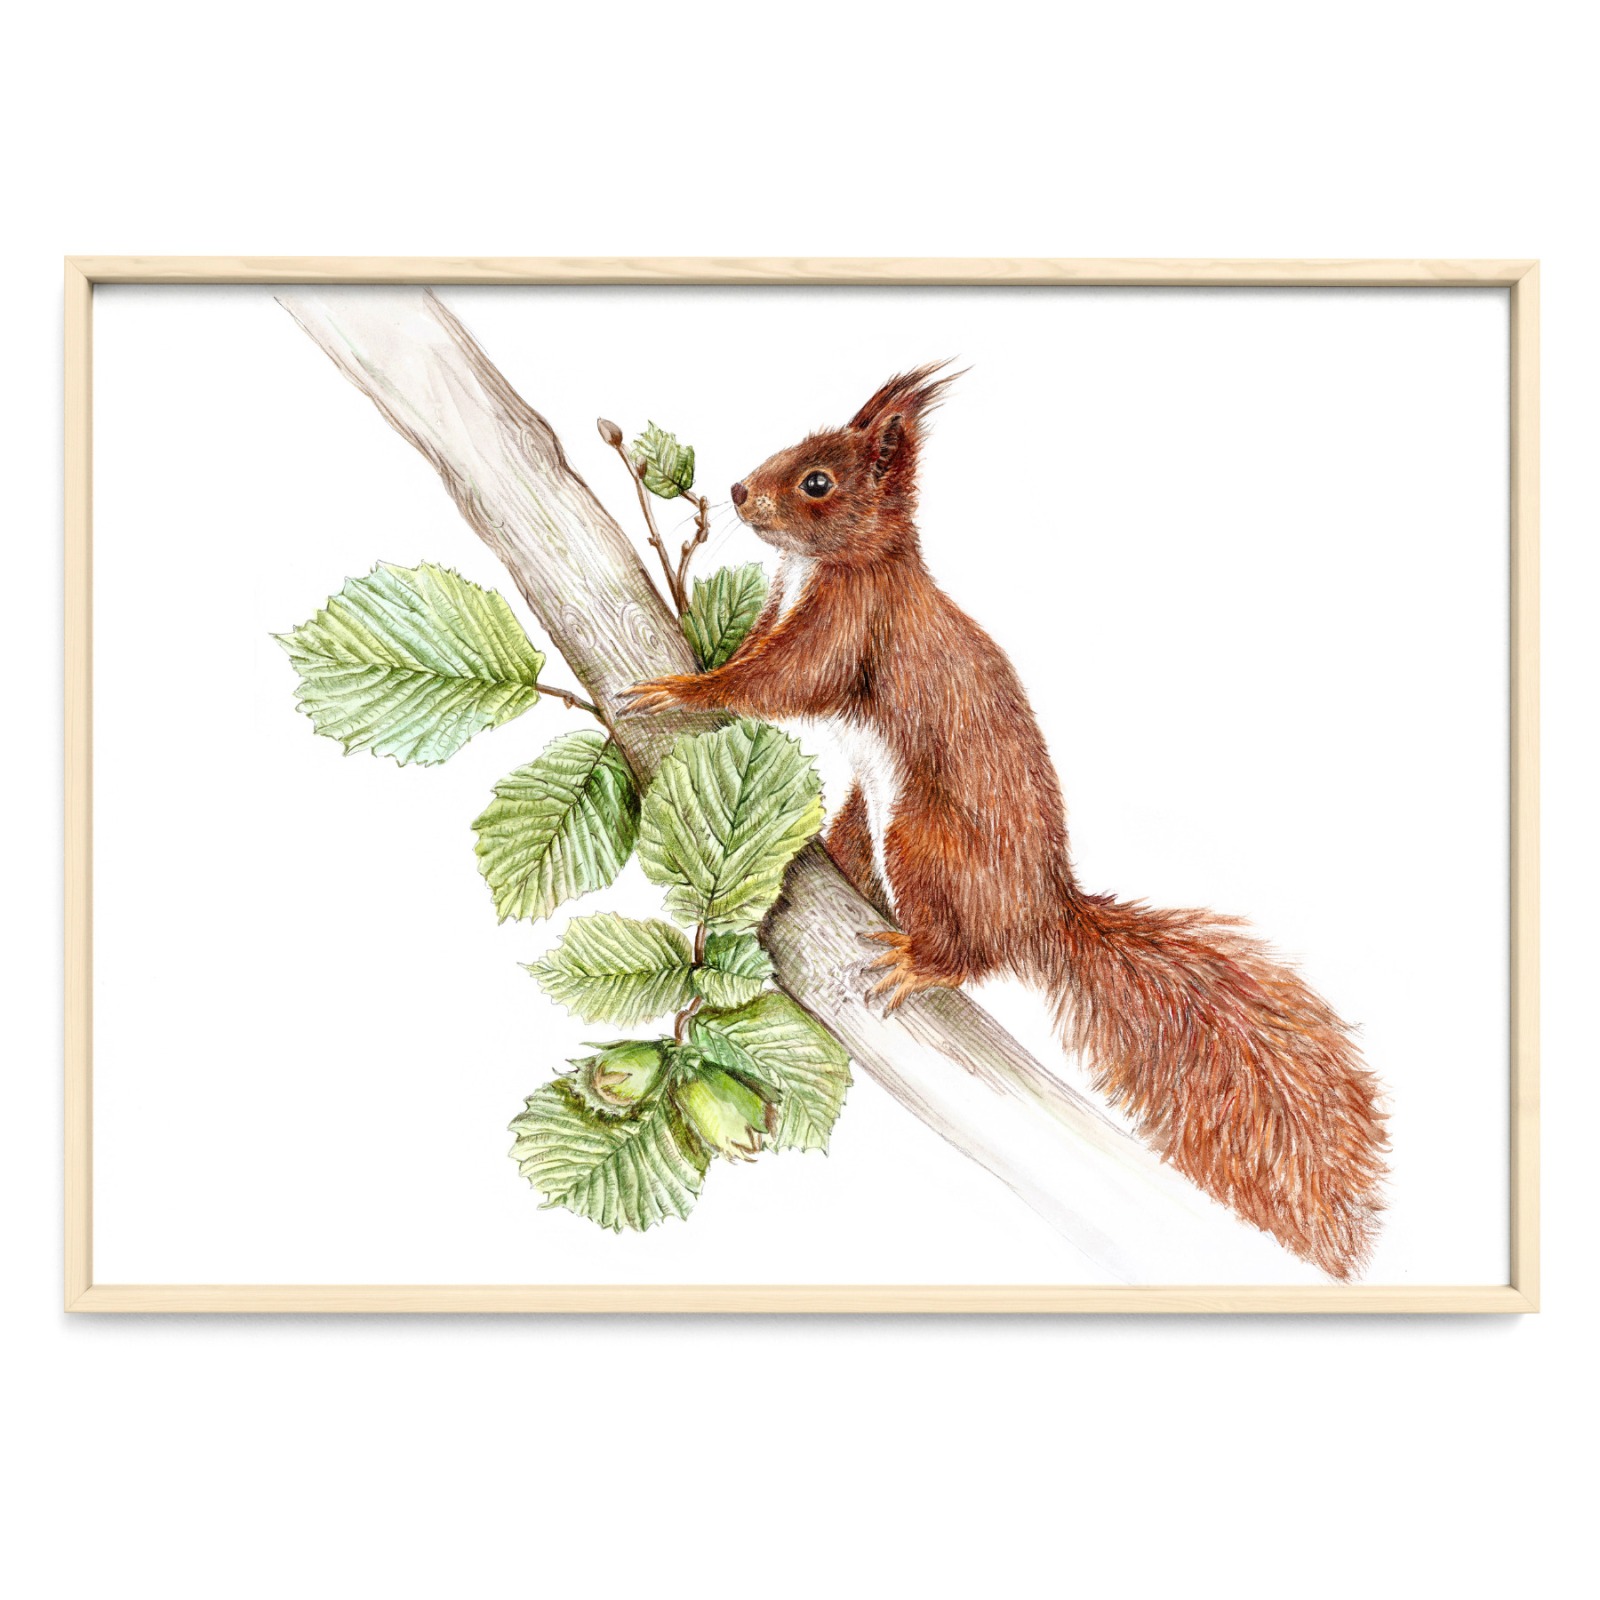 Eichhörnchen im Nussbaum Fine Art Print Giclée Print Poster Kunstdruck Tier Zeichnung 2